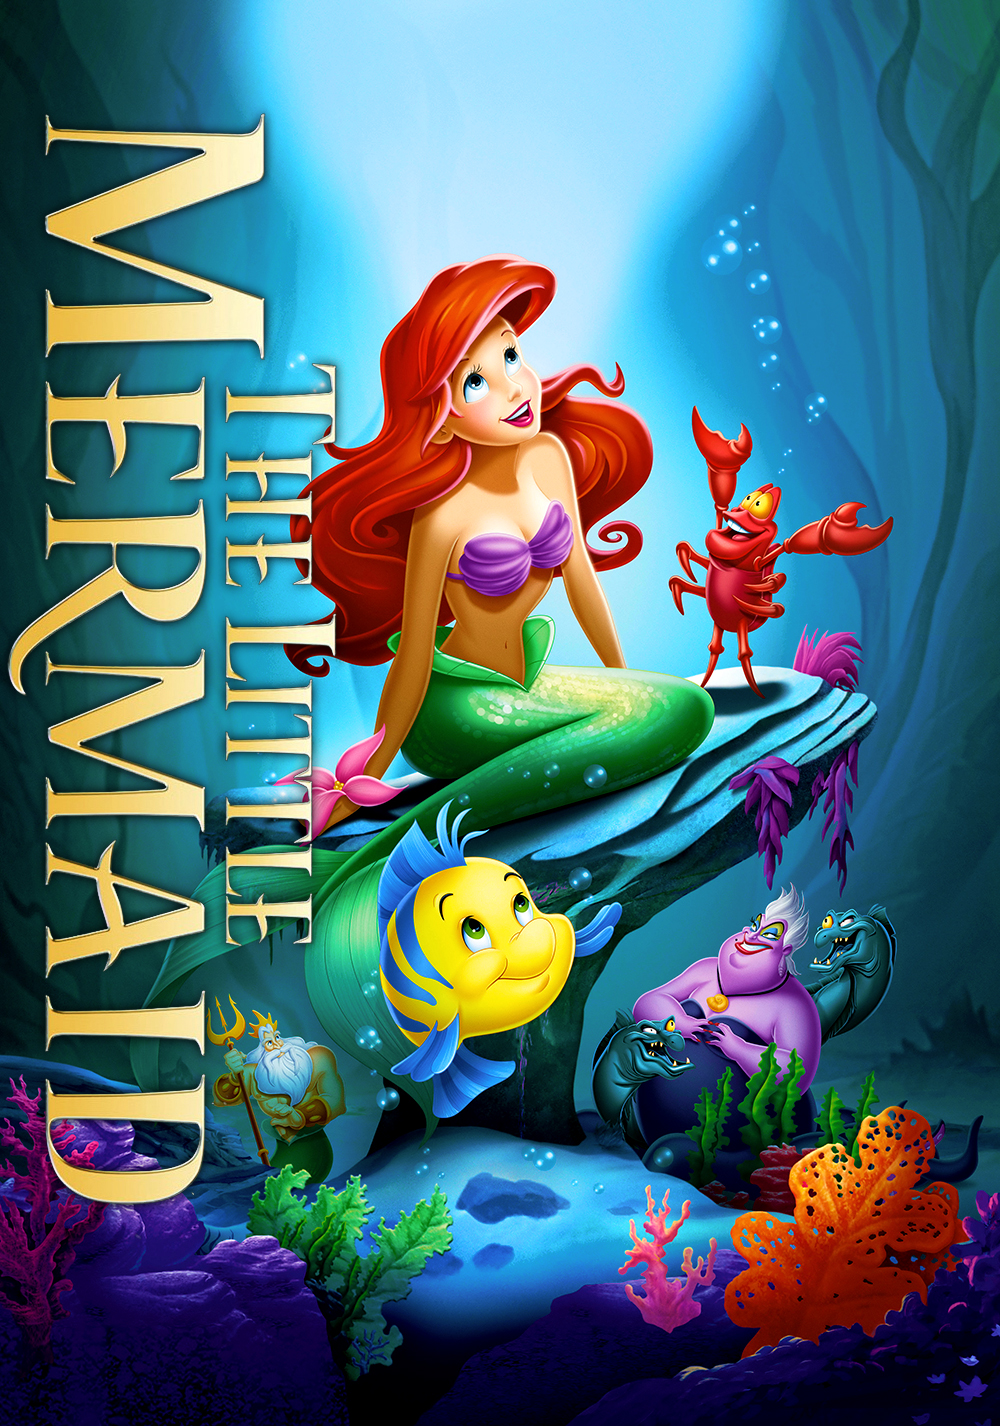 Disney Little Mermaid / Ariel / Mermaid Bathroom Scale - Works Great